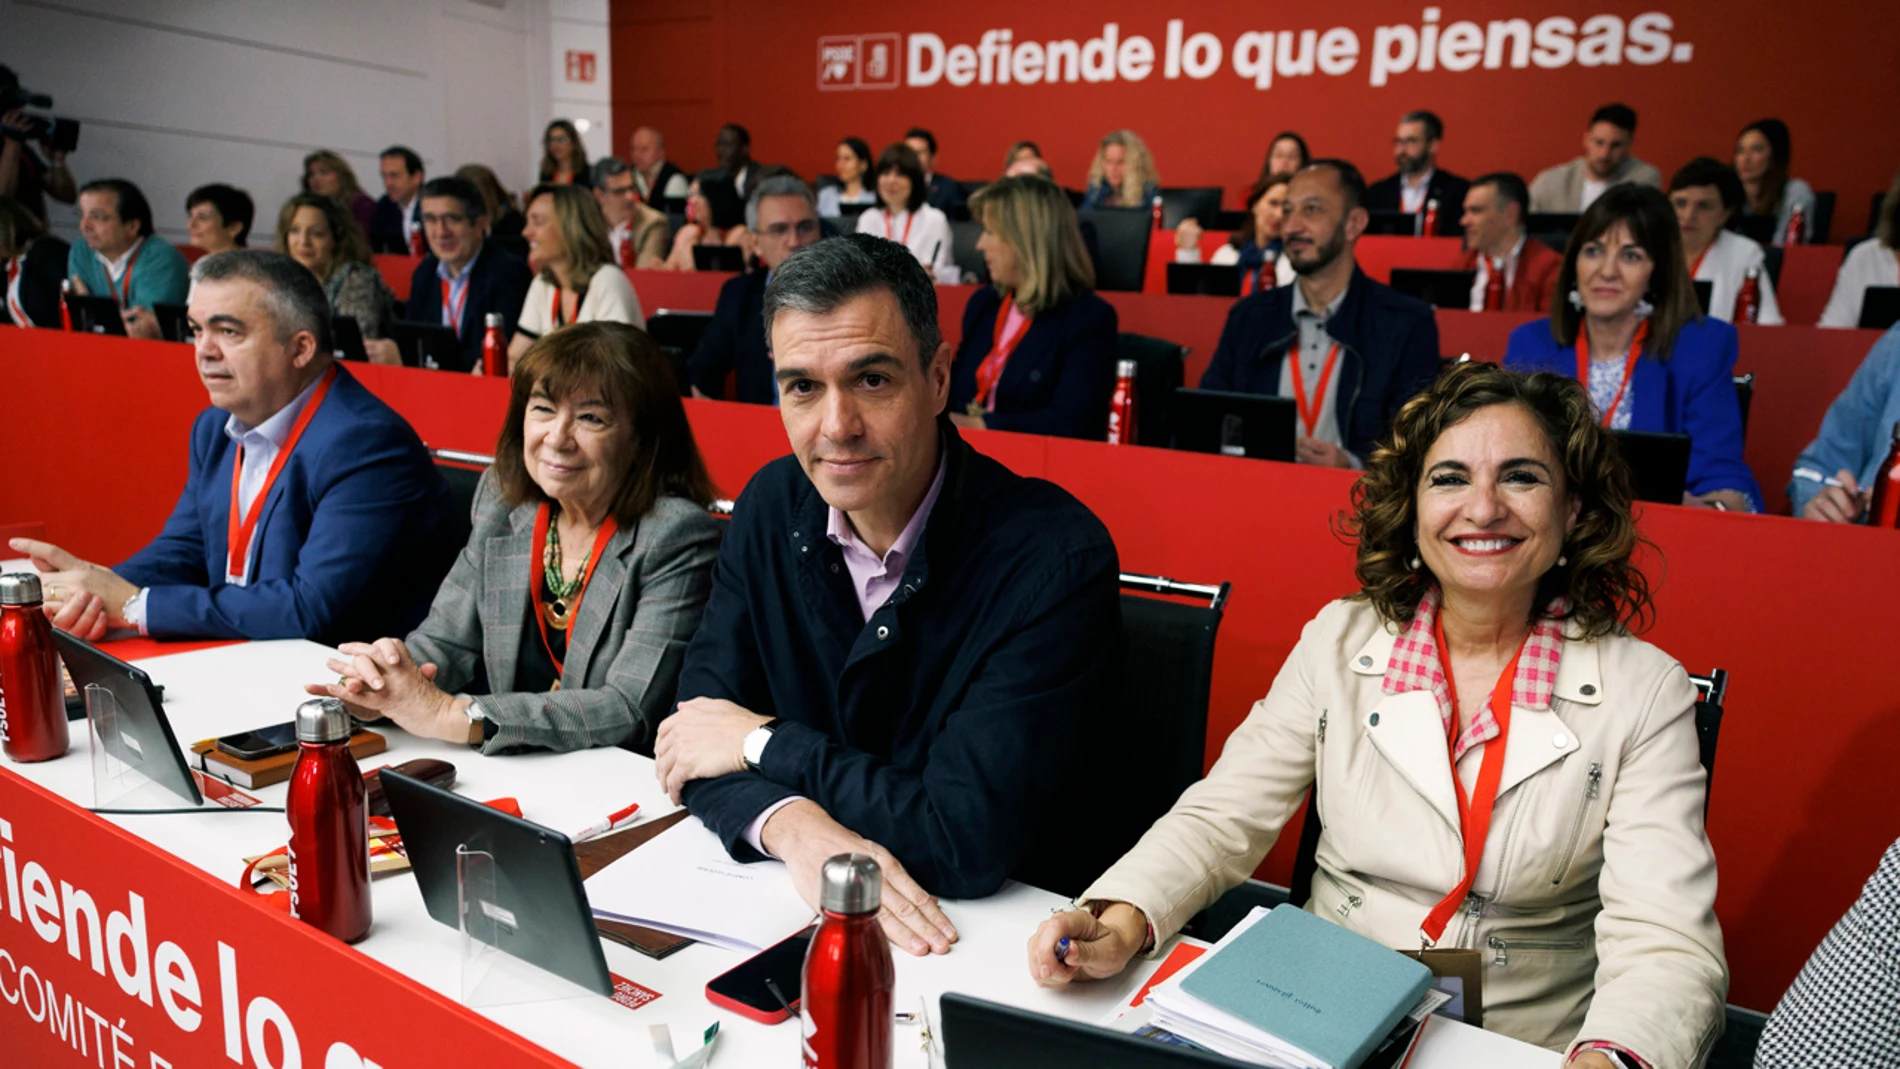 Sánchez, tajante con el PP: "¿Cuál es su plan? ¿Volver a recortar las pensiones? Que hablen claro"